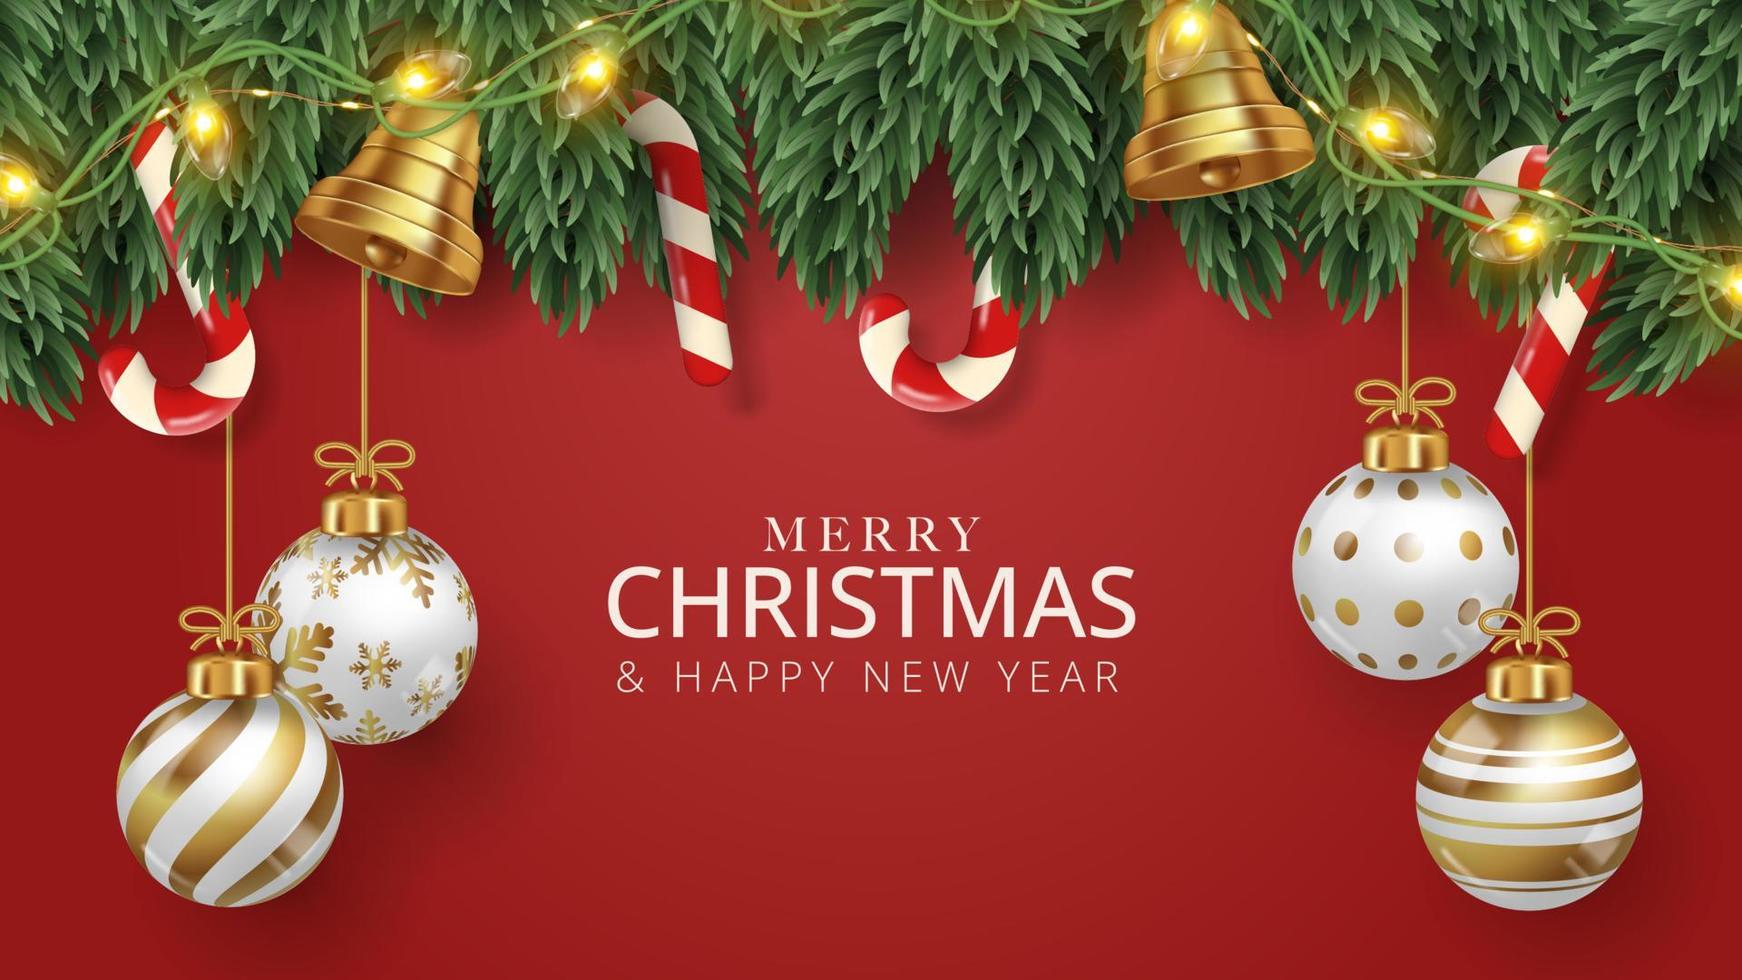 fundo de cartaz de feliz natal com galho de árvore de natal, bolas de natal, doces e sinos. ilustração vetorial vetor